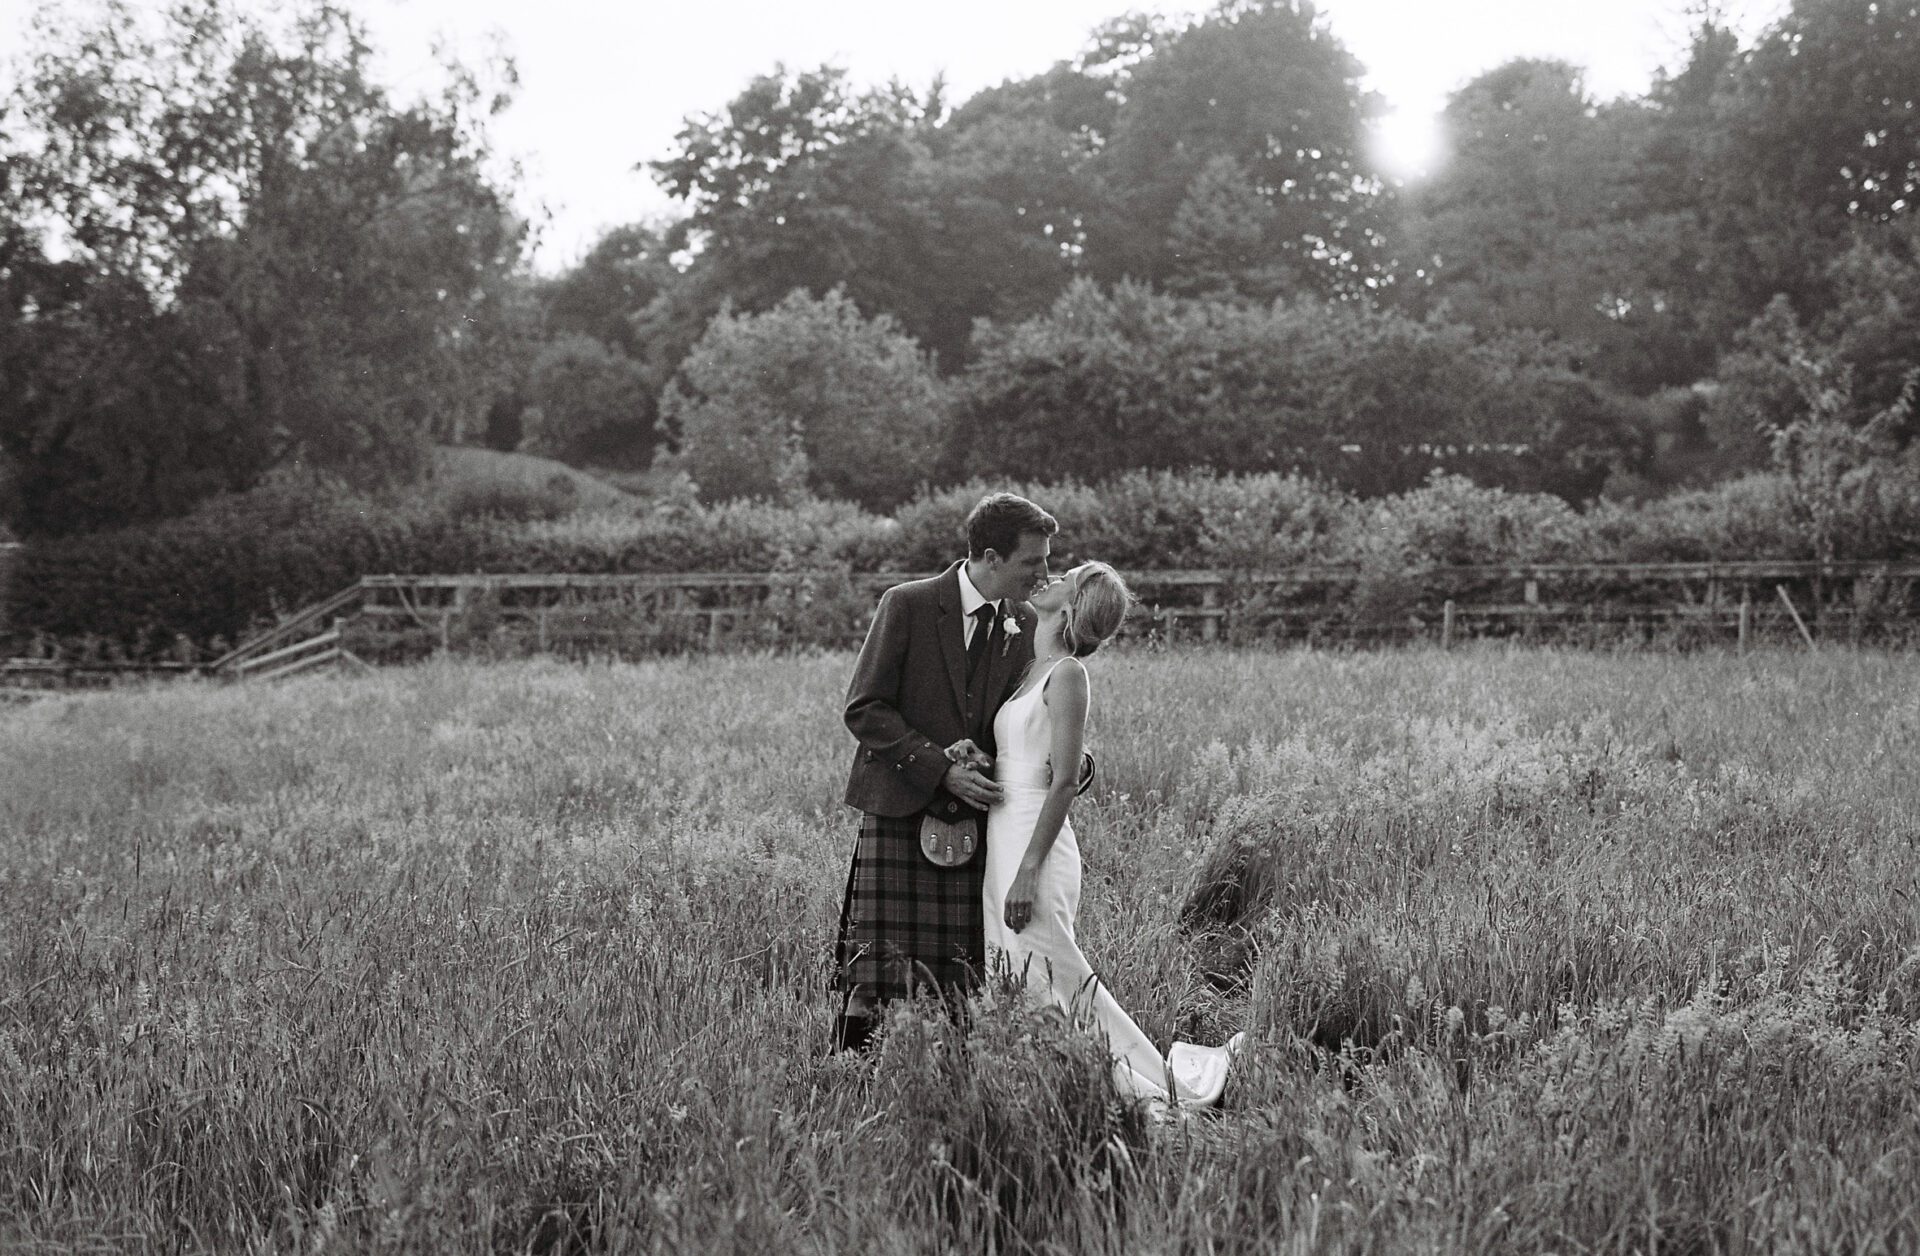 Golden hour at a Devon marquee wedding captured on 35mm film